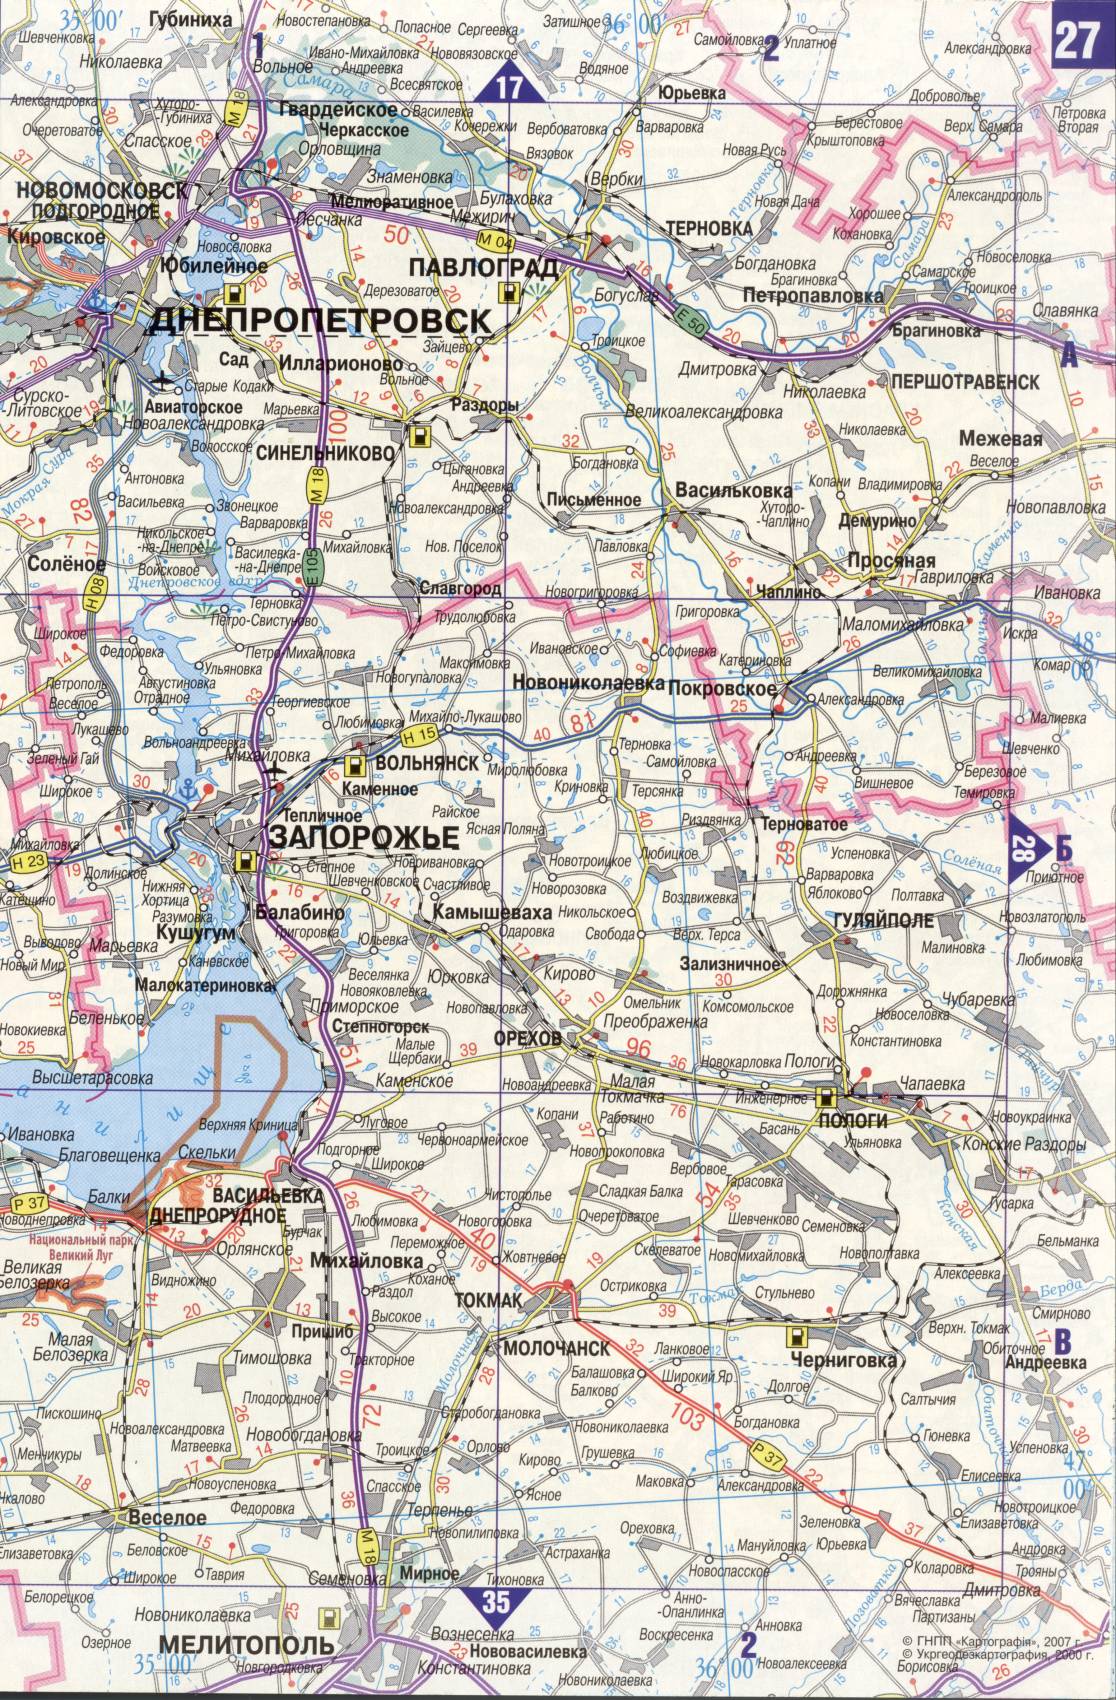 Карта Украины. Подробная карта дорог Украина из автомобильног атласа. скачать бесплатно, H2